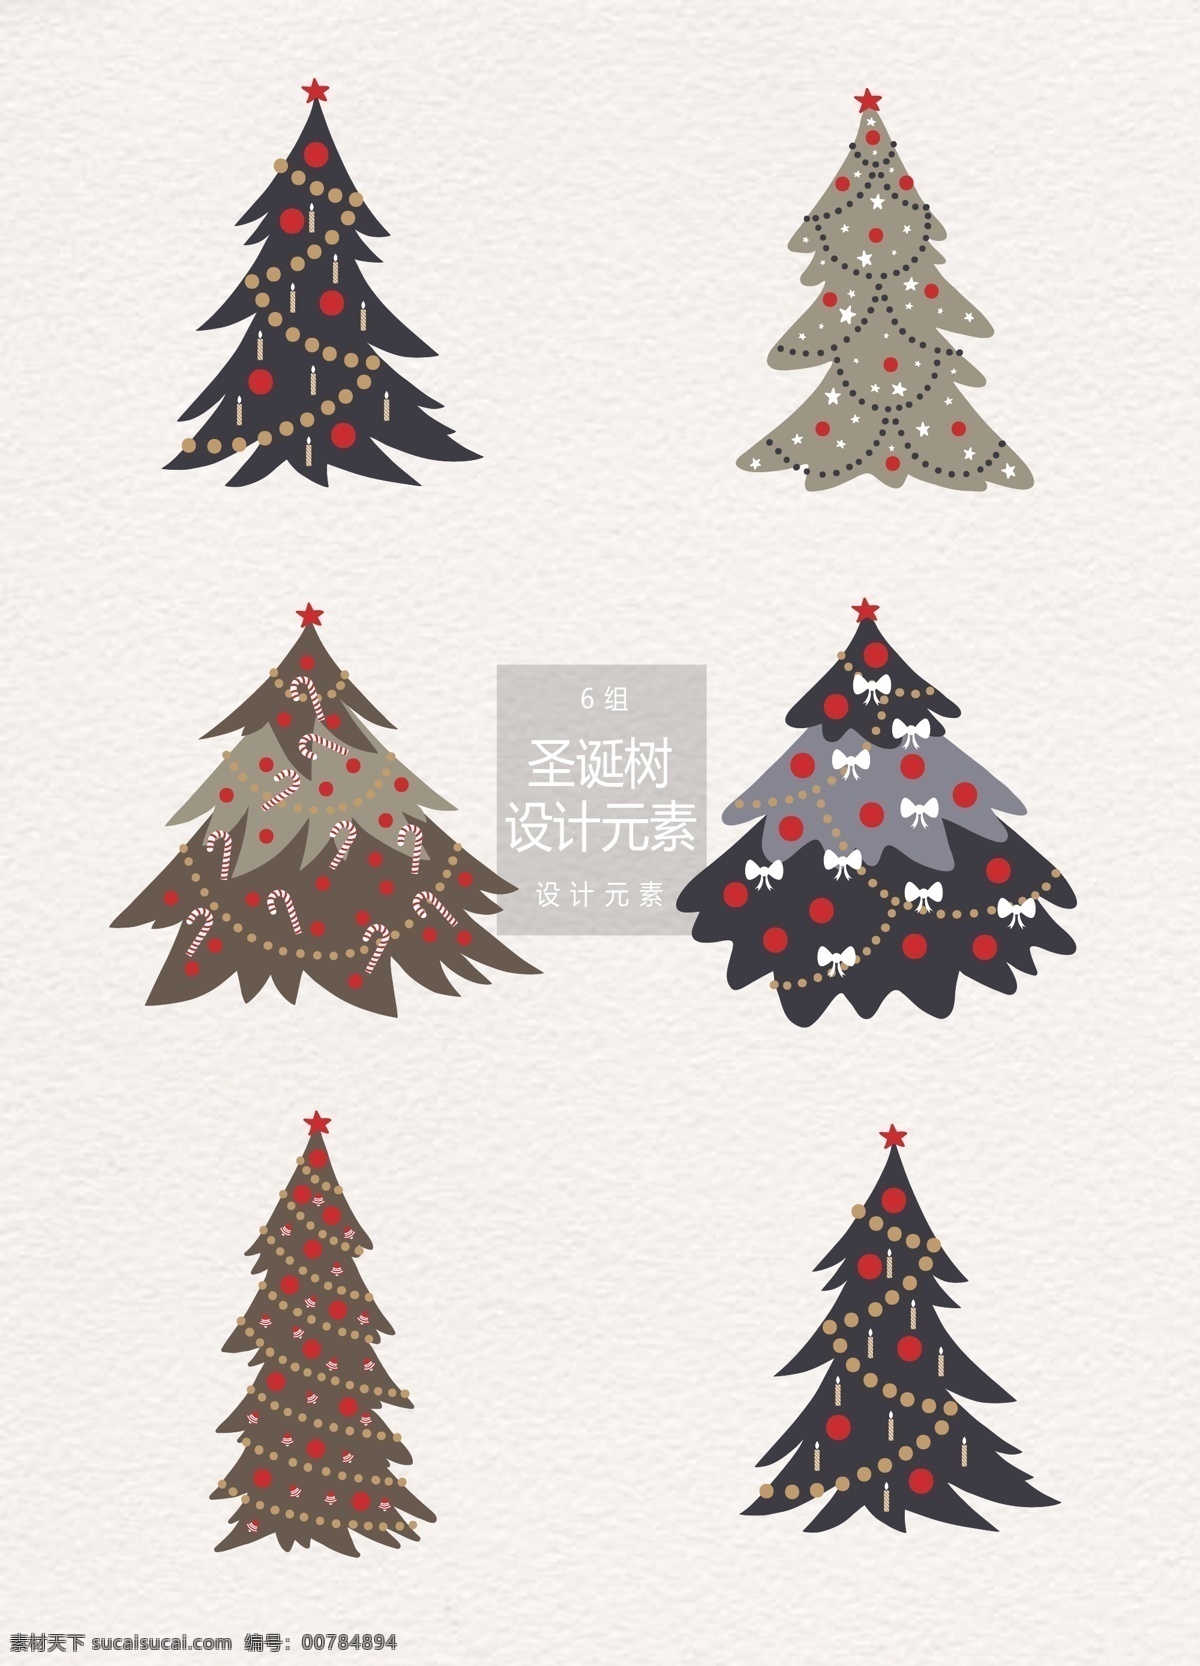 圣诞树 矢量 元素 矢量圣诞树 树木 圣诞节 设计元素 树 圣诞